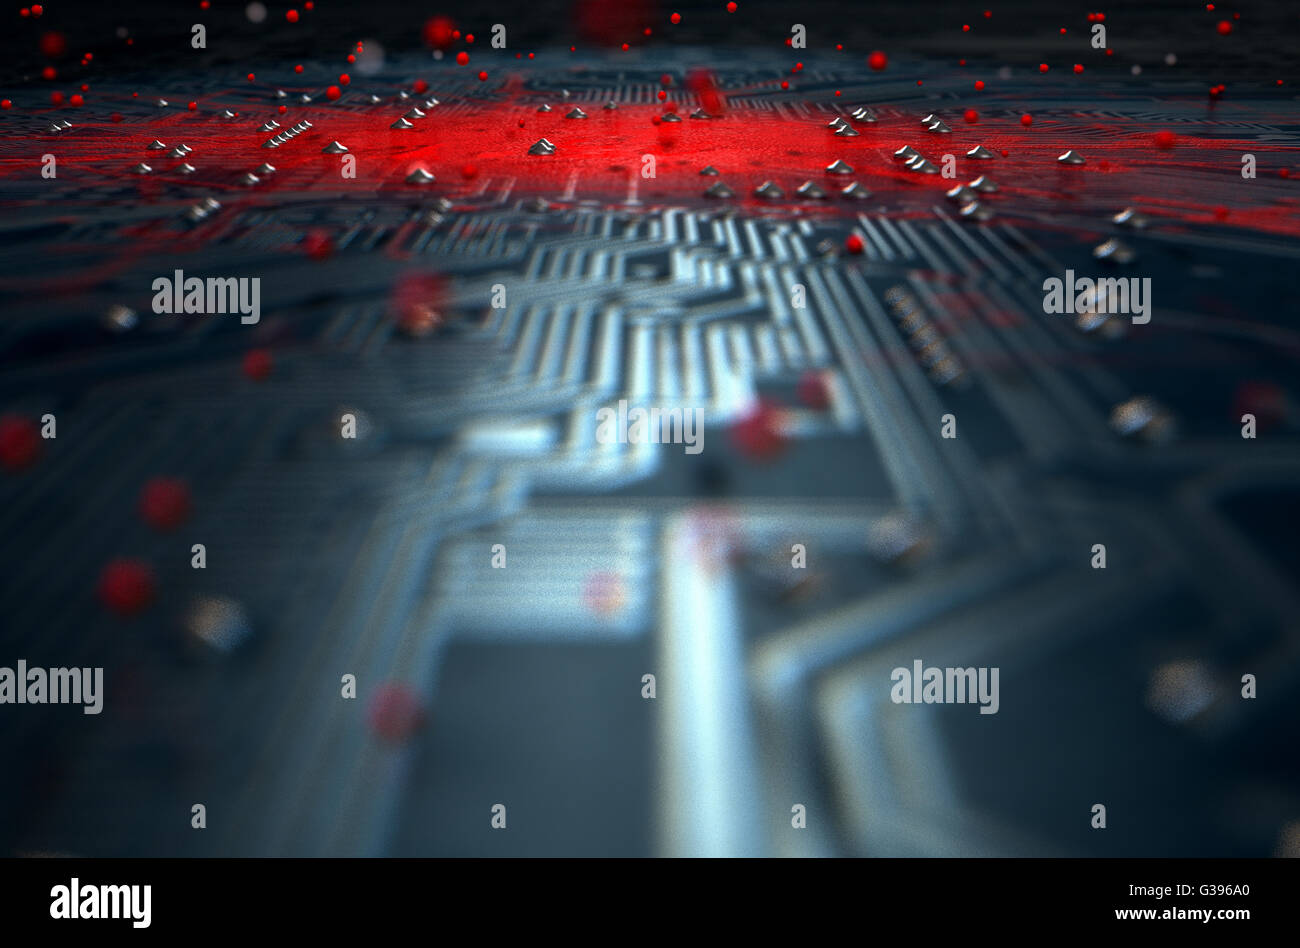 Un rendu 3D d'une vue macro d'une carte à circuits imprimés, d'un virus se répand l'infection apparente rouge du centre Banque D'Images